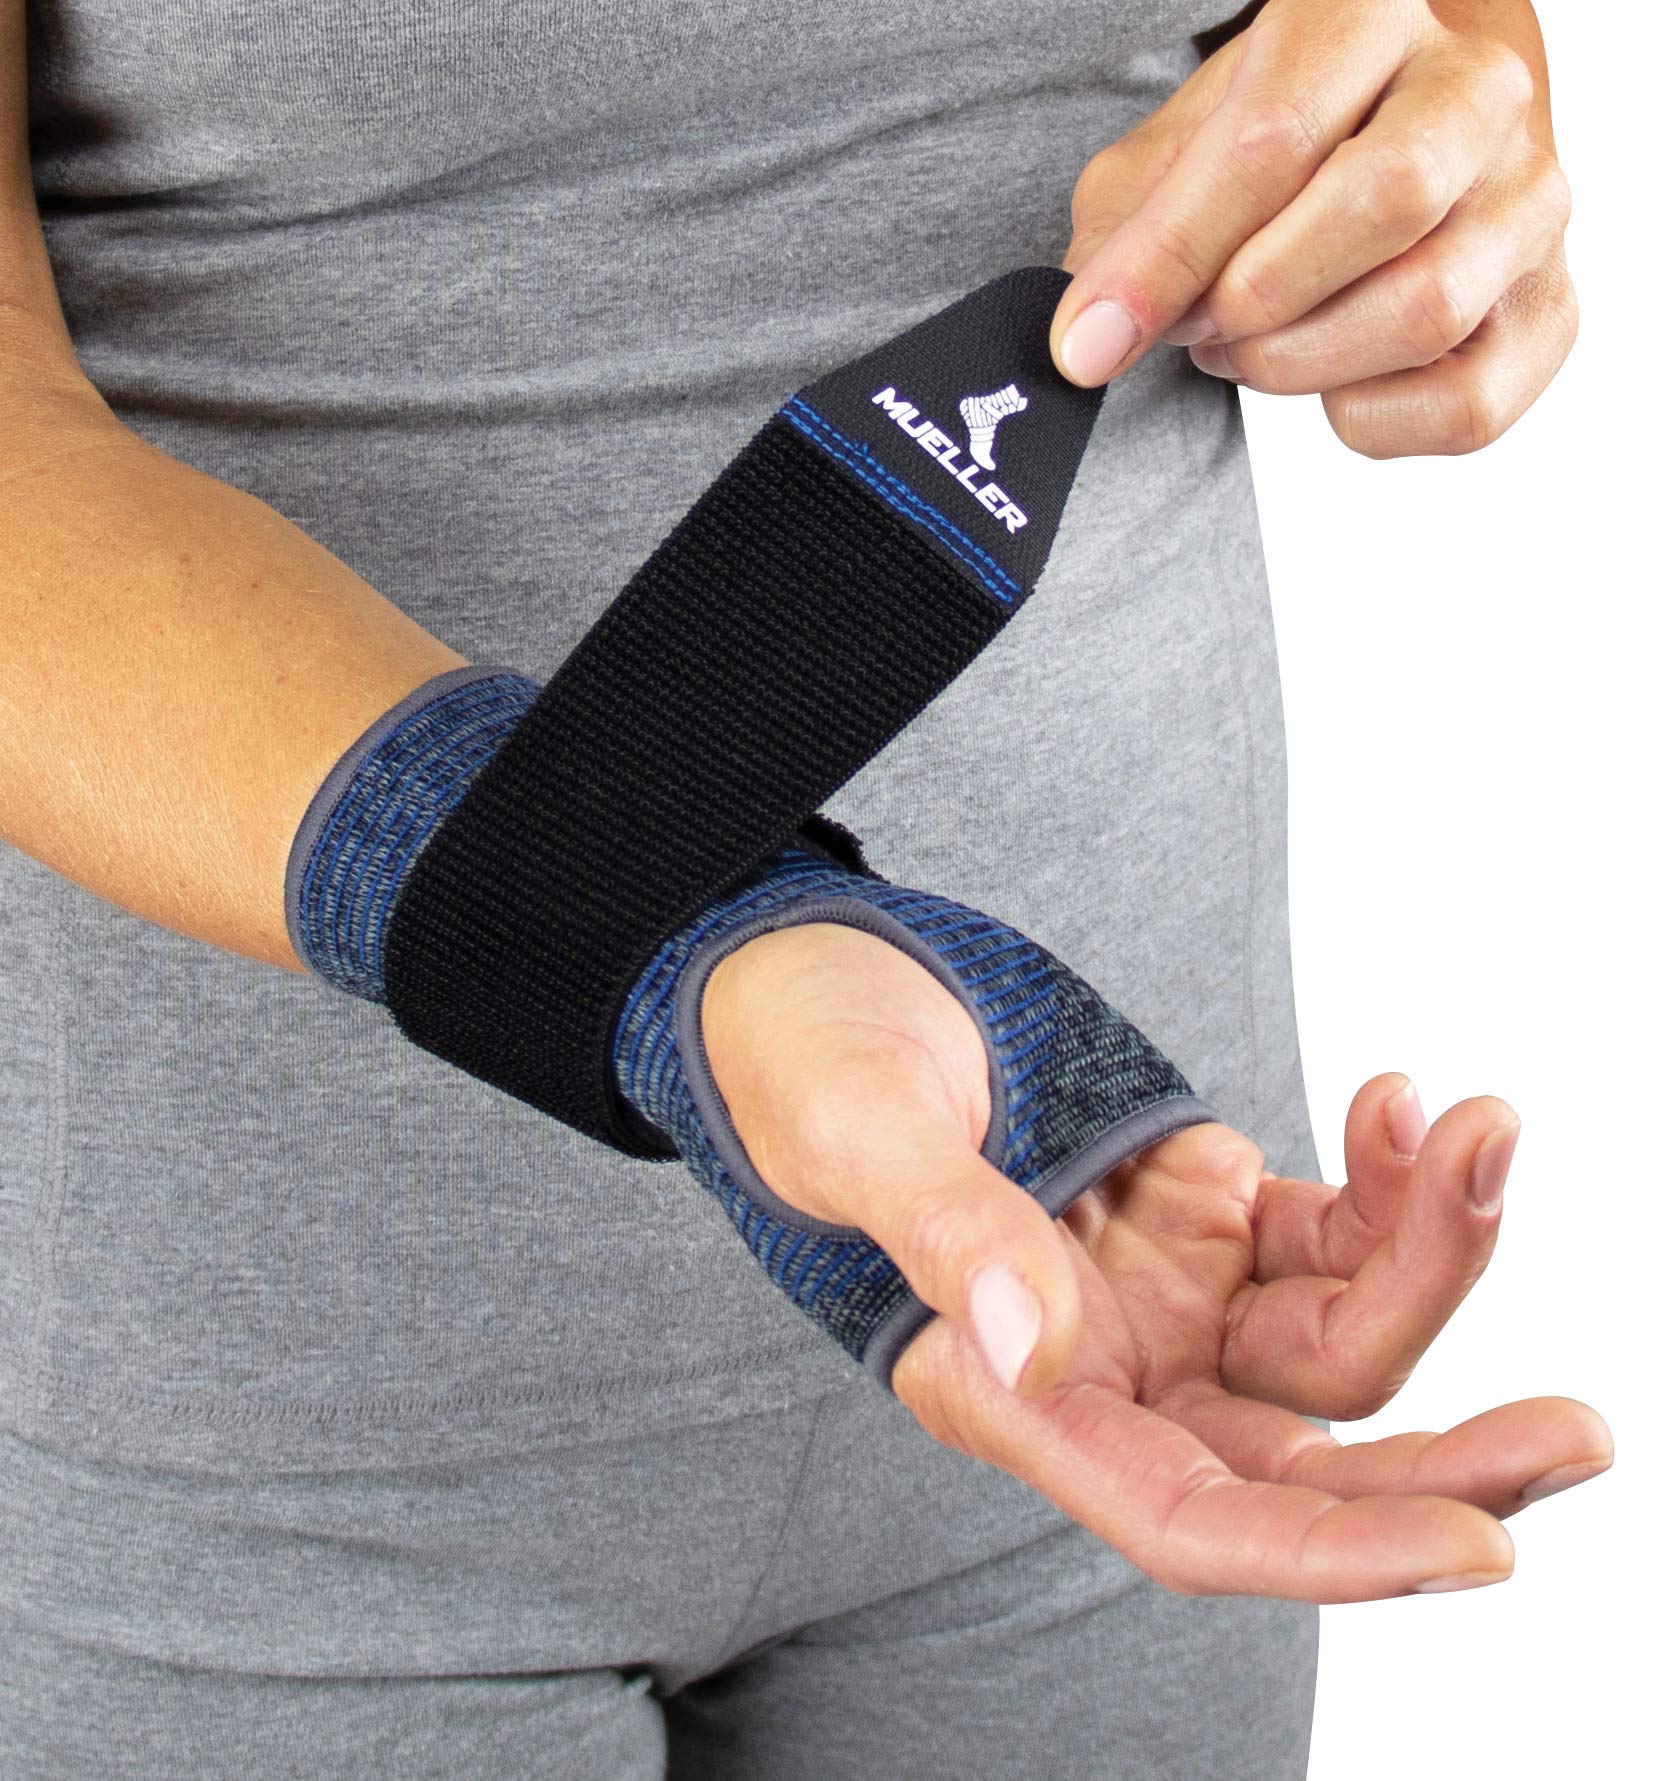 MUELLER Sports Medicine Reversible 3-in-1 Wrist Brace with Splint, For Men and Women, Black/Blue, One Size